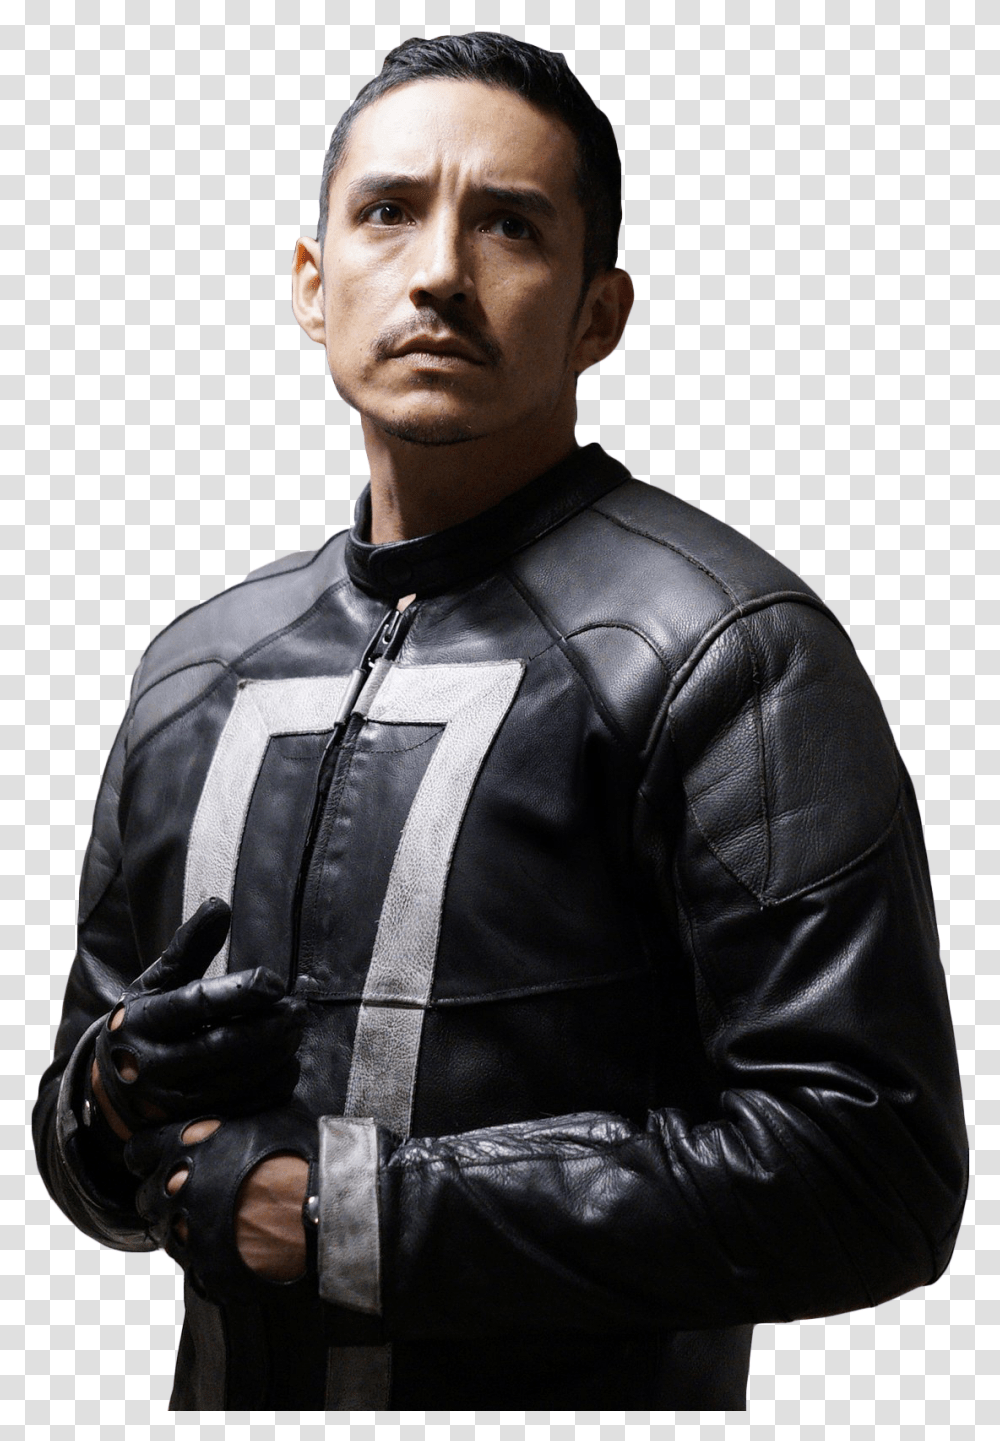 Robbie Reyes Aka Ghost Rider Robbie Reyes, Person, Jacket, Coat Transparent Png